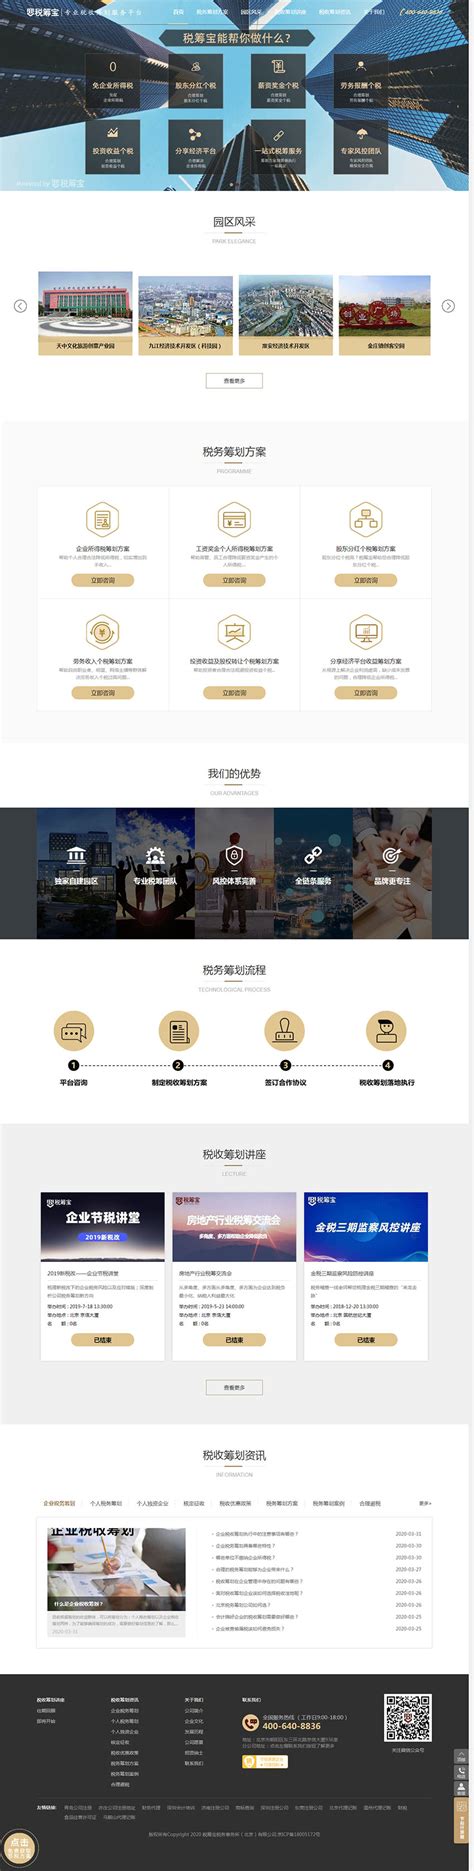 郑州网站设计公司案例_金融保险_集团站_郑州网站建设 - 新速科技